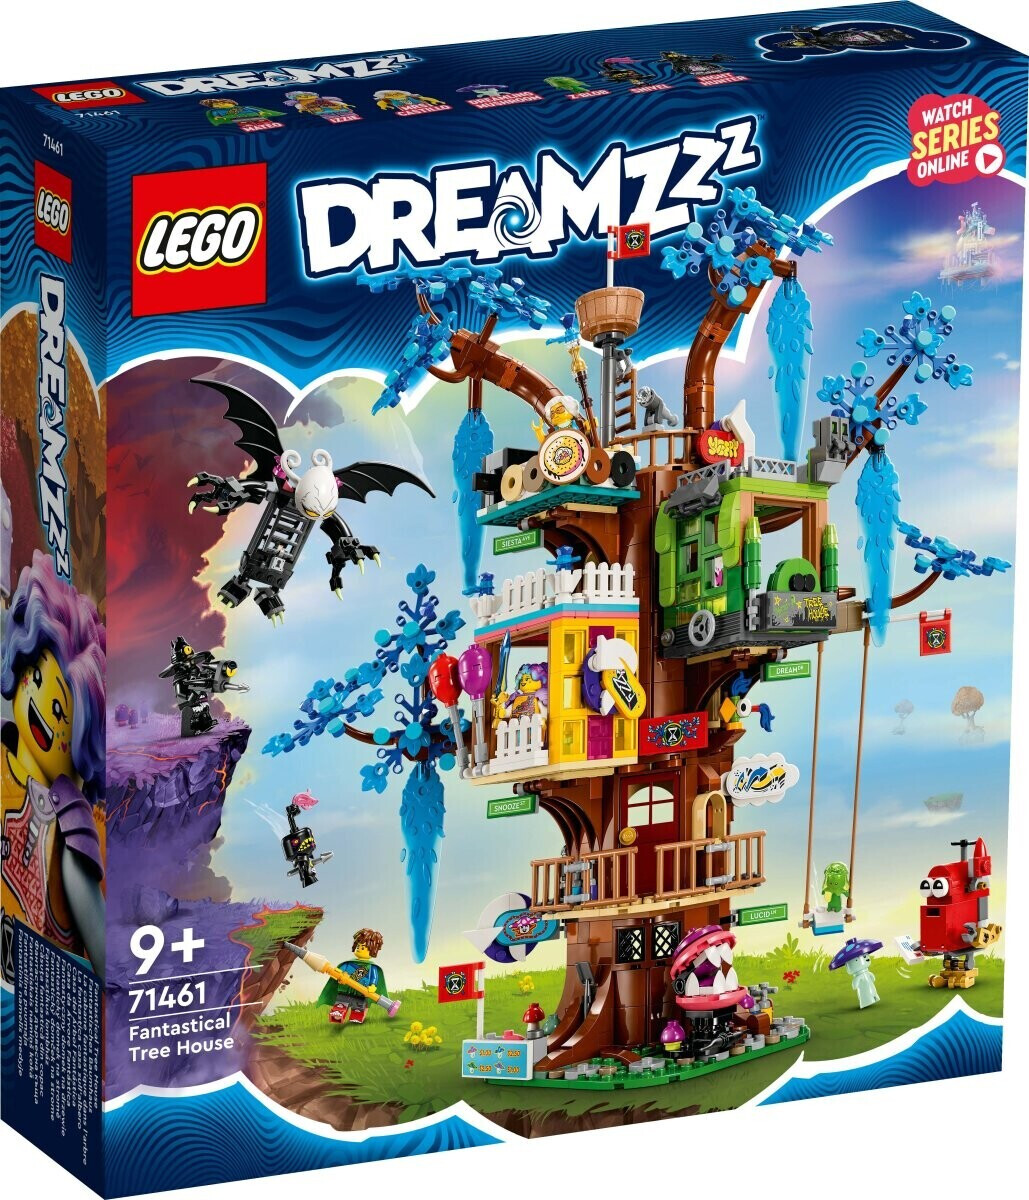 LEGO 71461 Fantastisches Baumhaus DREAMZzz™